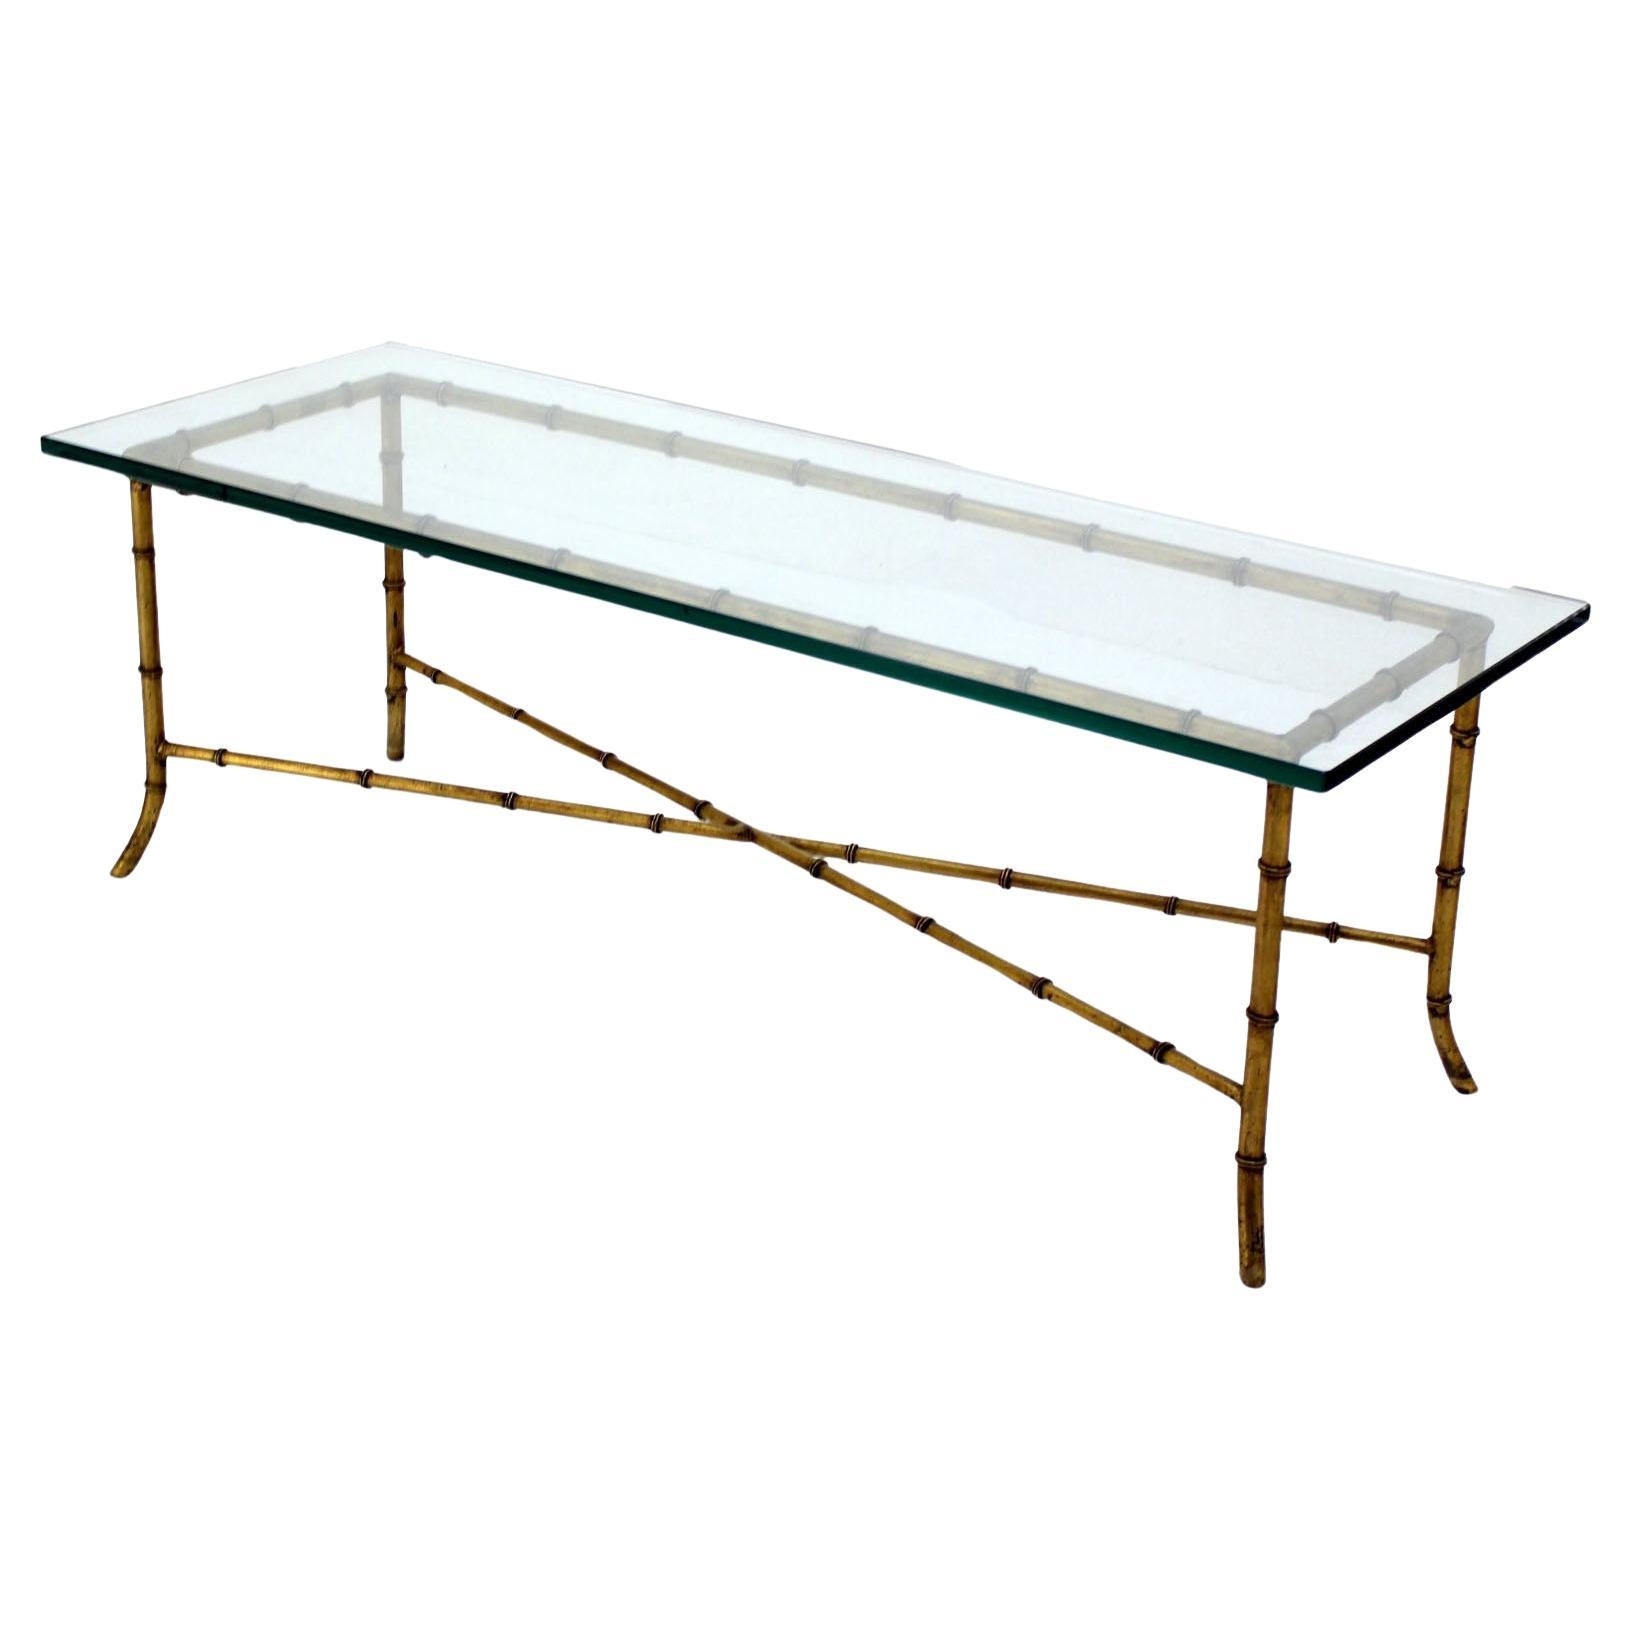 Table basse rectangulaire moderne du milieu du siècle dernier, avec plateau en verre de faux bambou doré